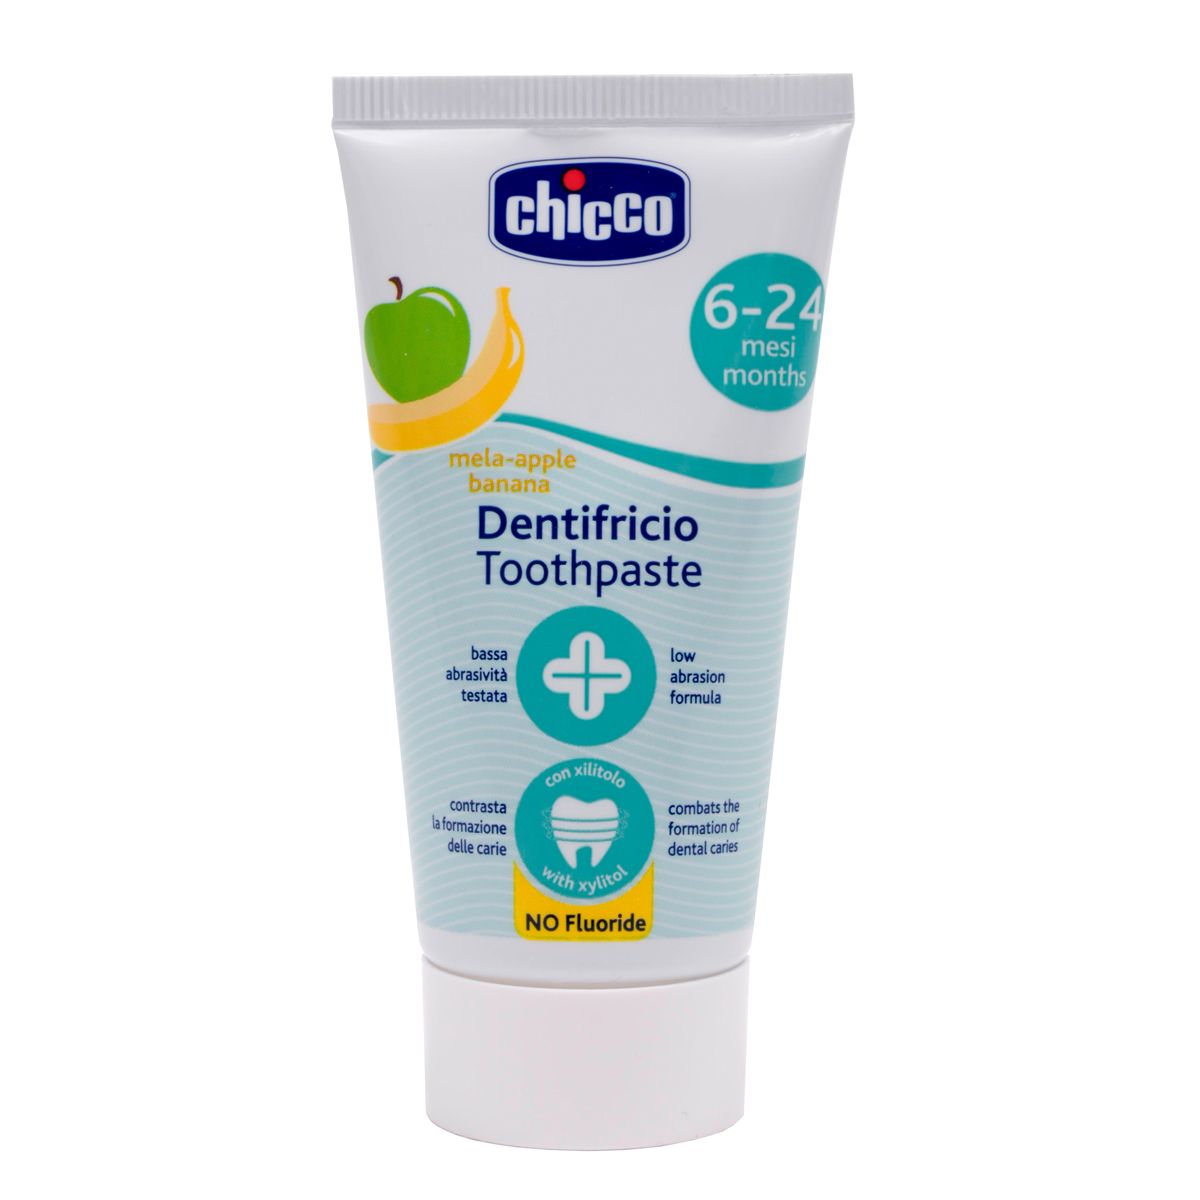 Зубная паста Chicco Яблоко-Банан, 50 мл (02320.10) - фото 1